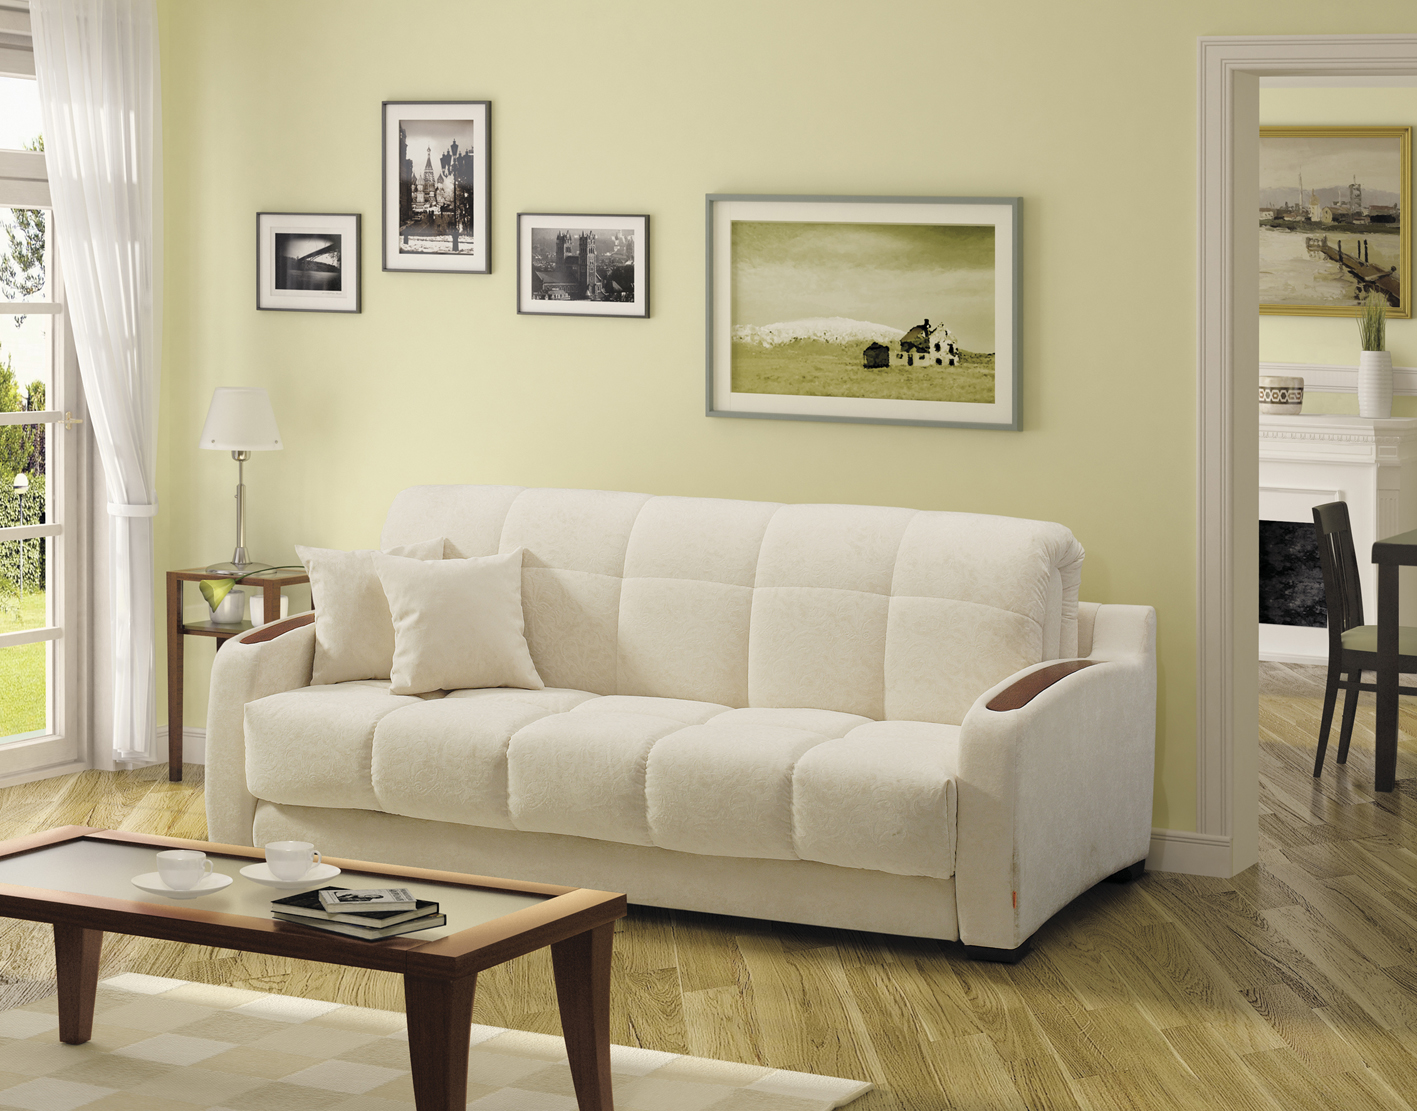 világos kanapé a hálószoba kialakításában